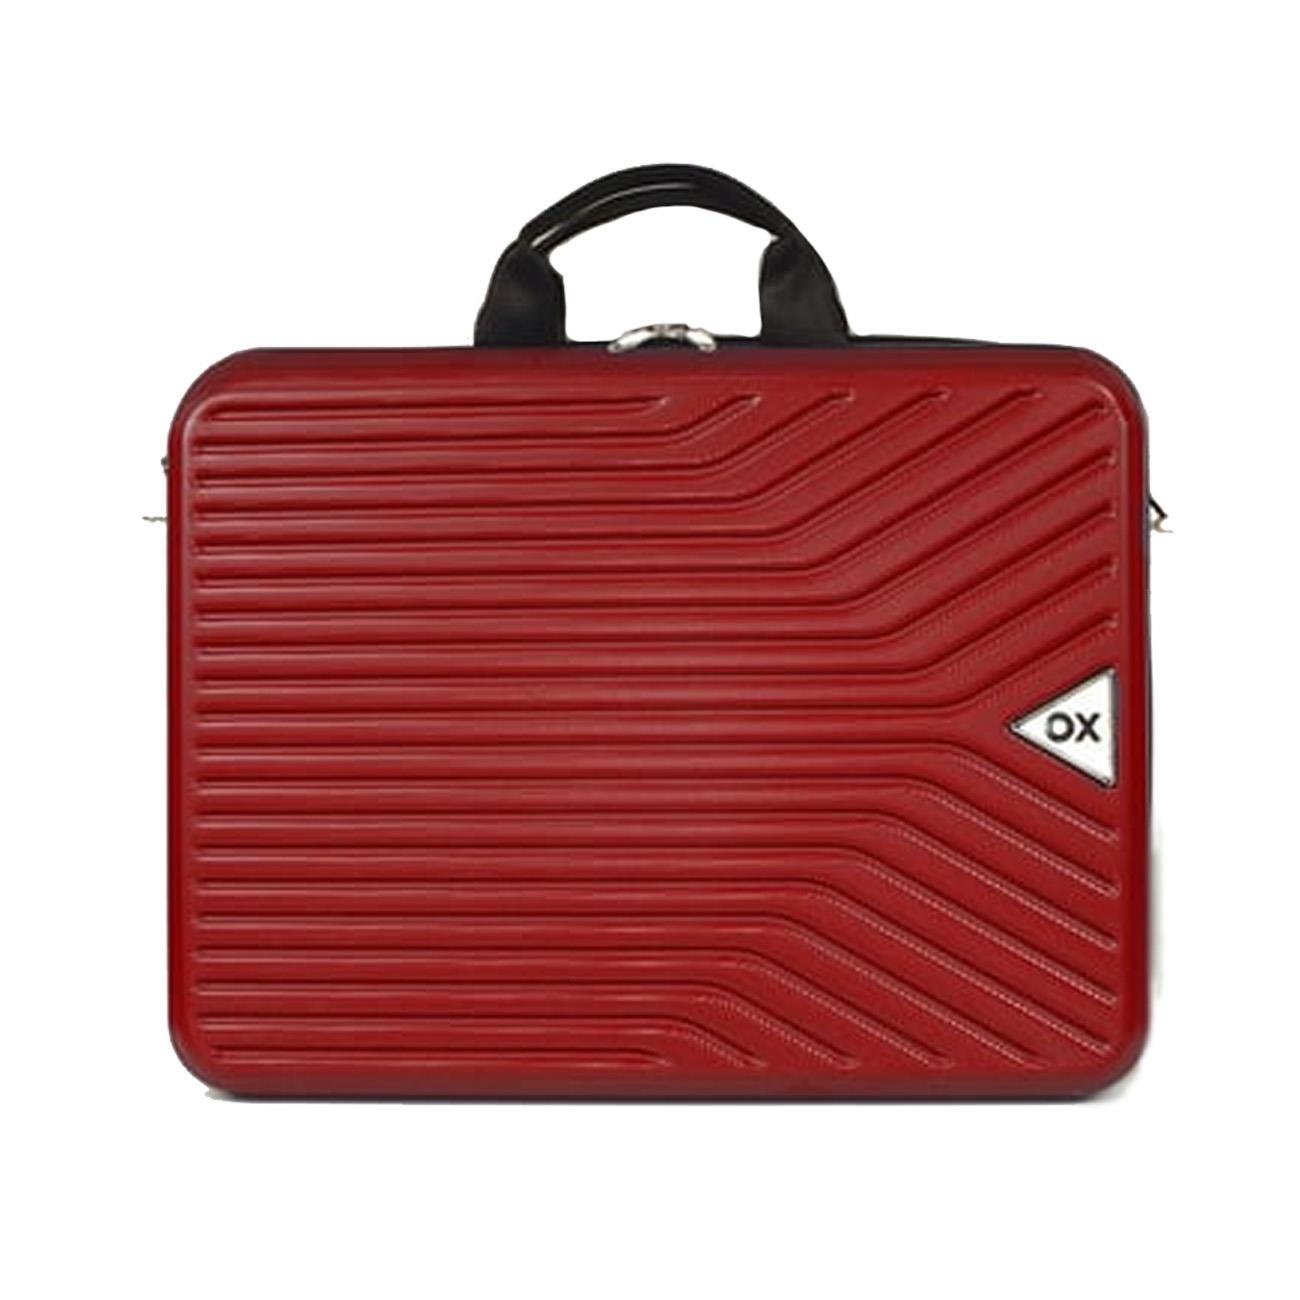 Ox Luggage 220223 15,6-17,3 ınç Laptop Çantası Kırmızı